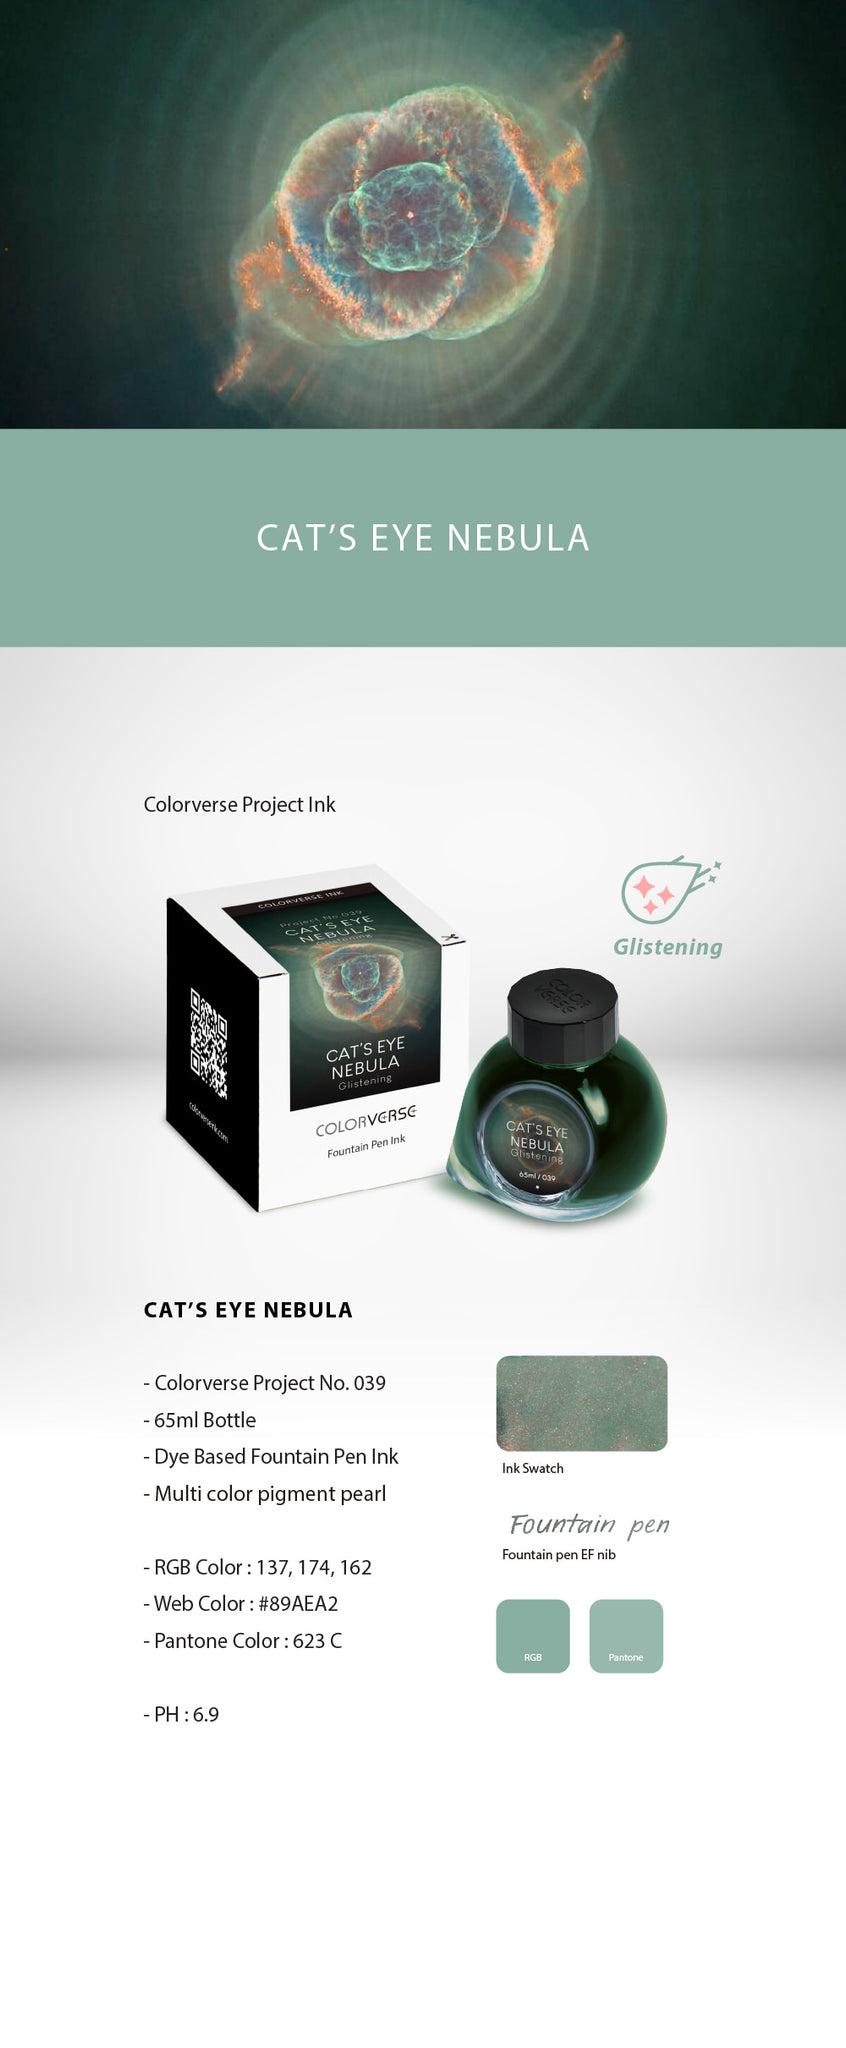 Cat's Eye Nebula by Colorverse Project 6